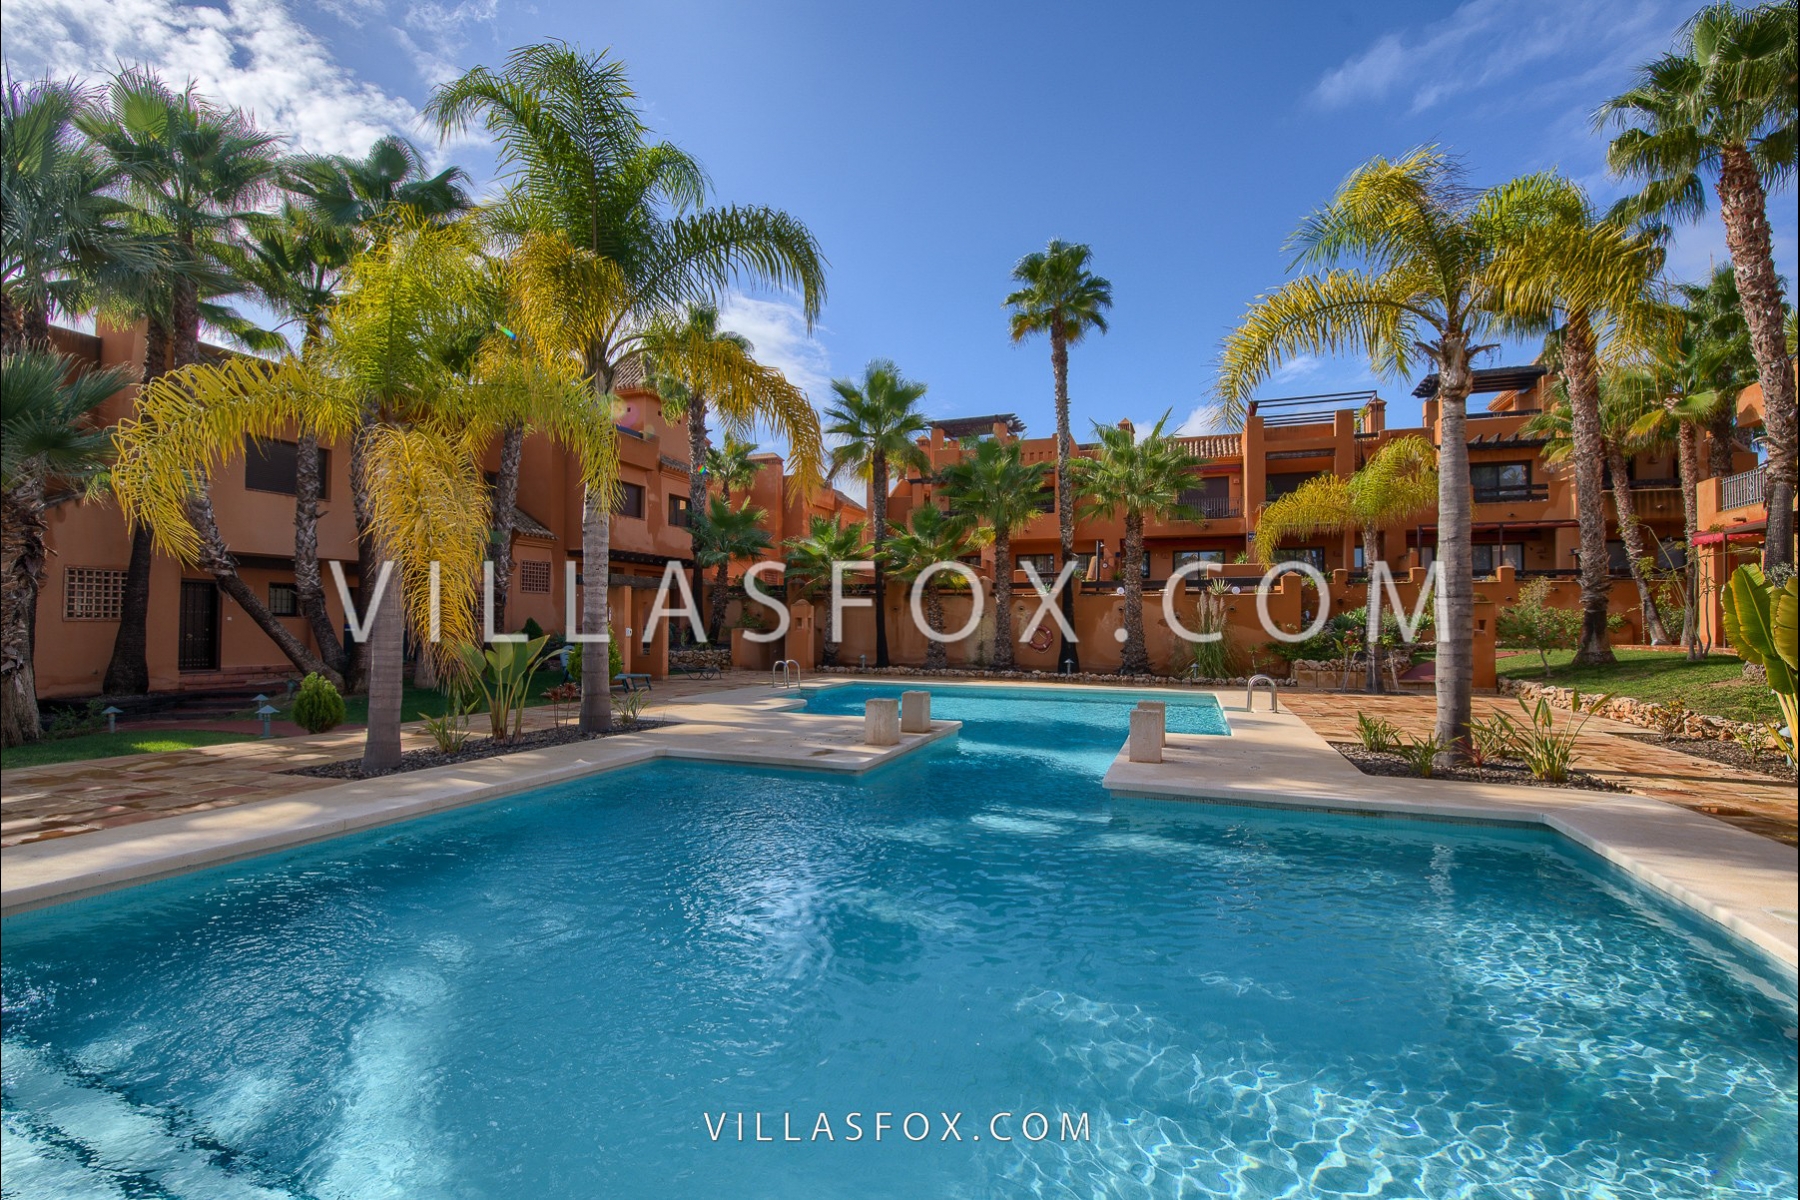 Villas_Fox_inmobiliaria_Cerro_del_Sol-4619828a1bc503